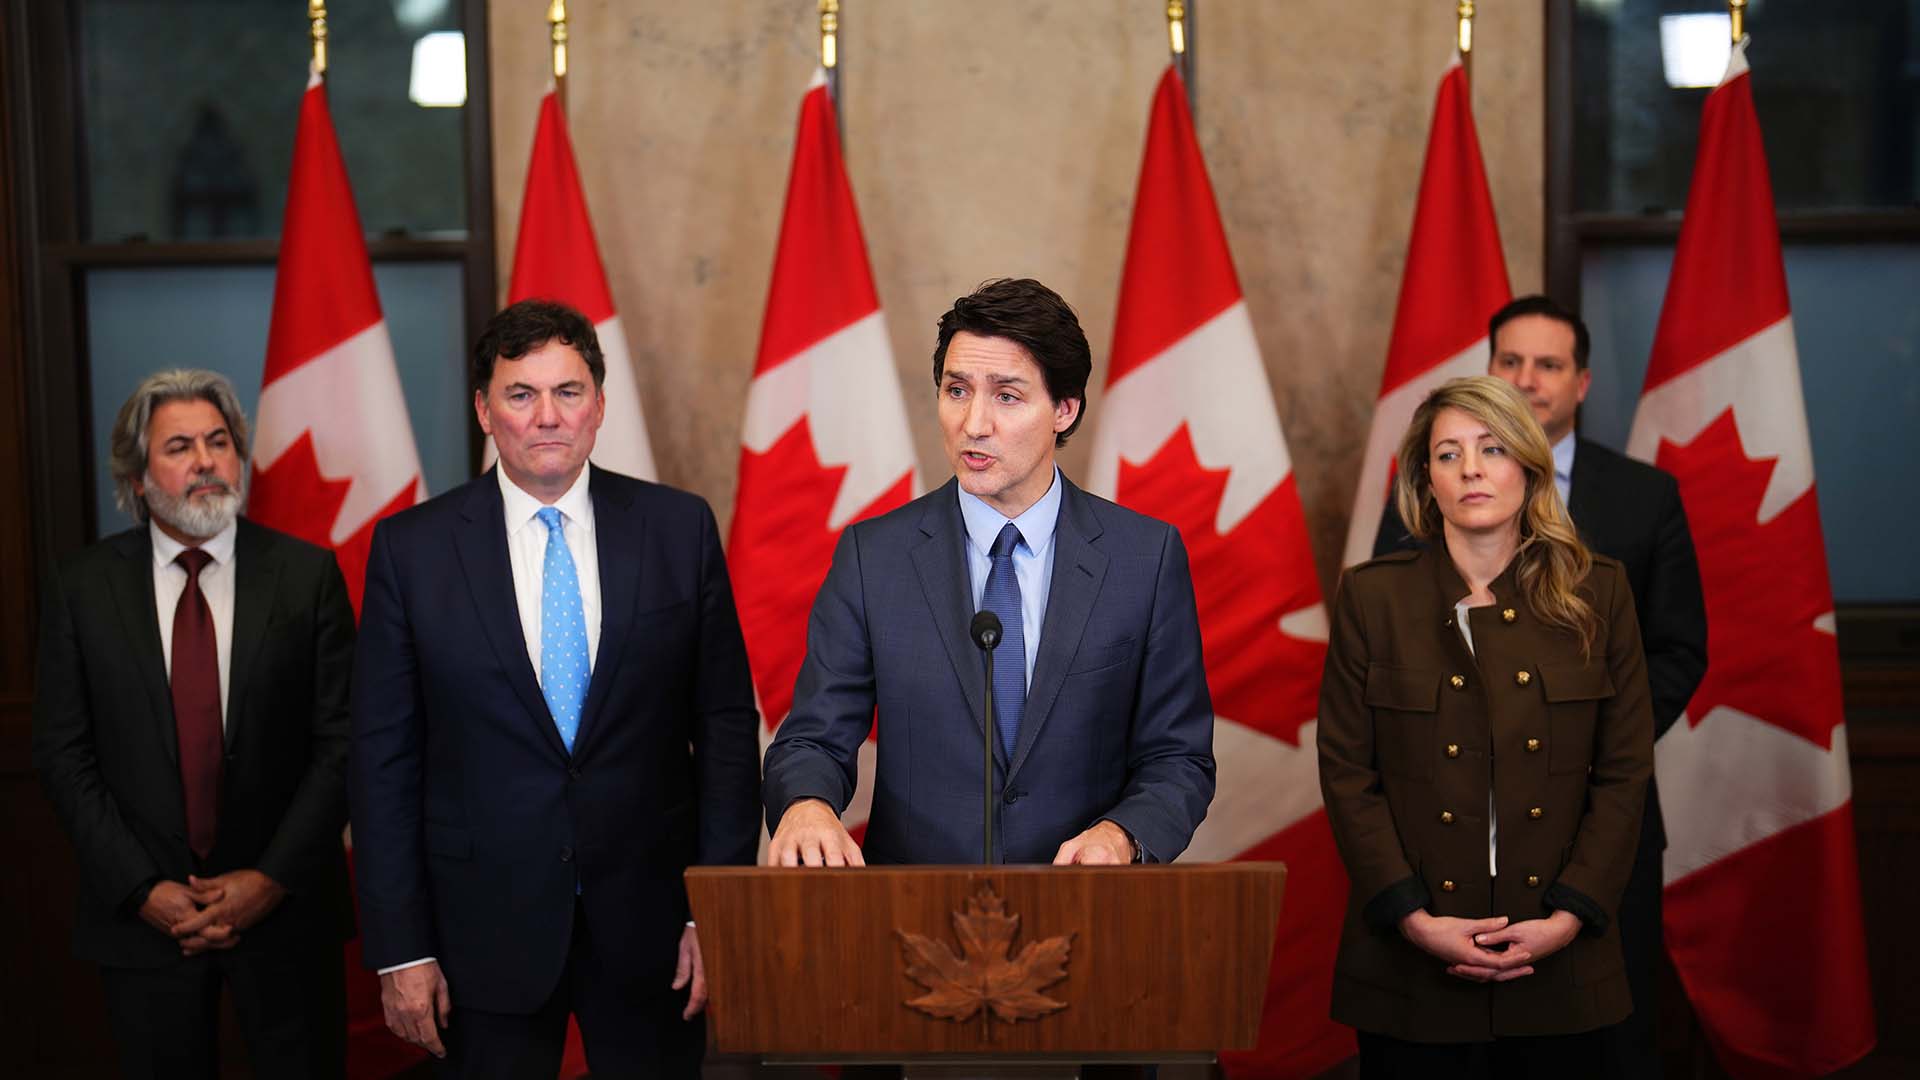 Le premier ministre du Canada, Justin Trudeau, a annoncé lundi qu’il nommera un rapporteur indépendant afin d’enquêter sur l’ingérence étrangère au Canada.